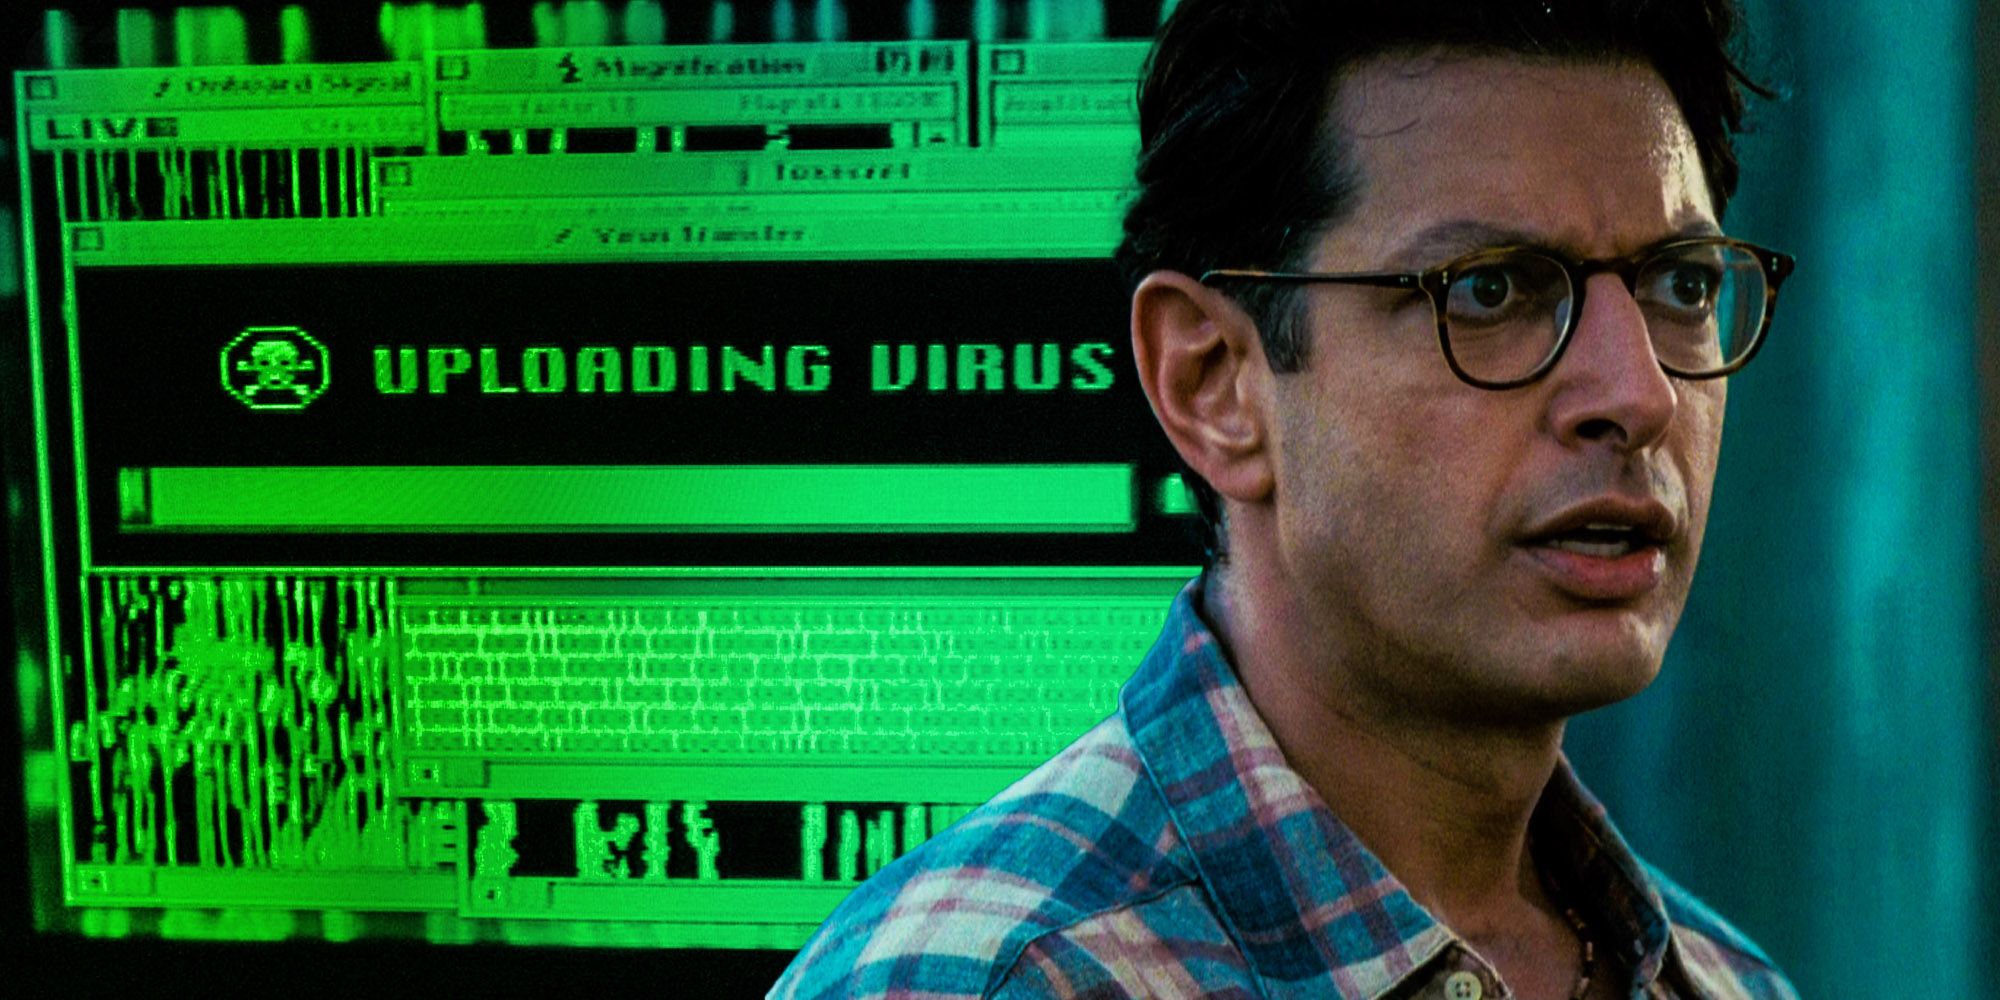 David Jeff Goldblum Independence Day Deleted Scene uploading virus plot hole